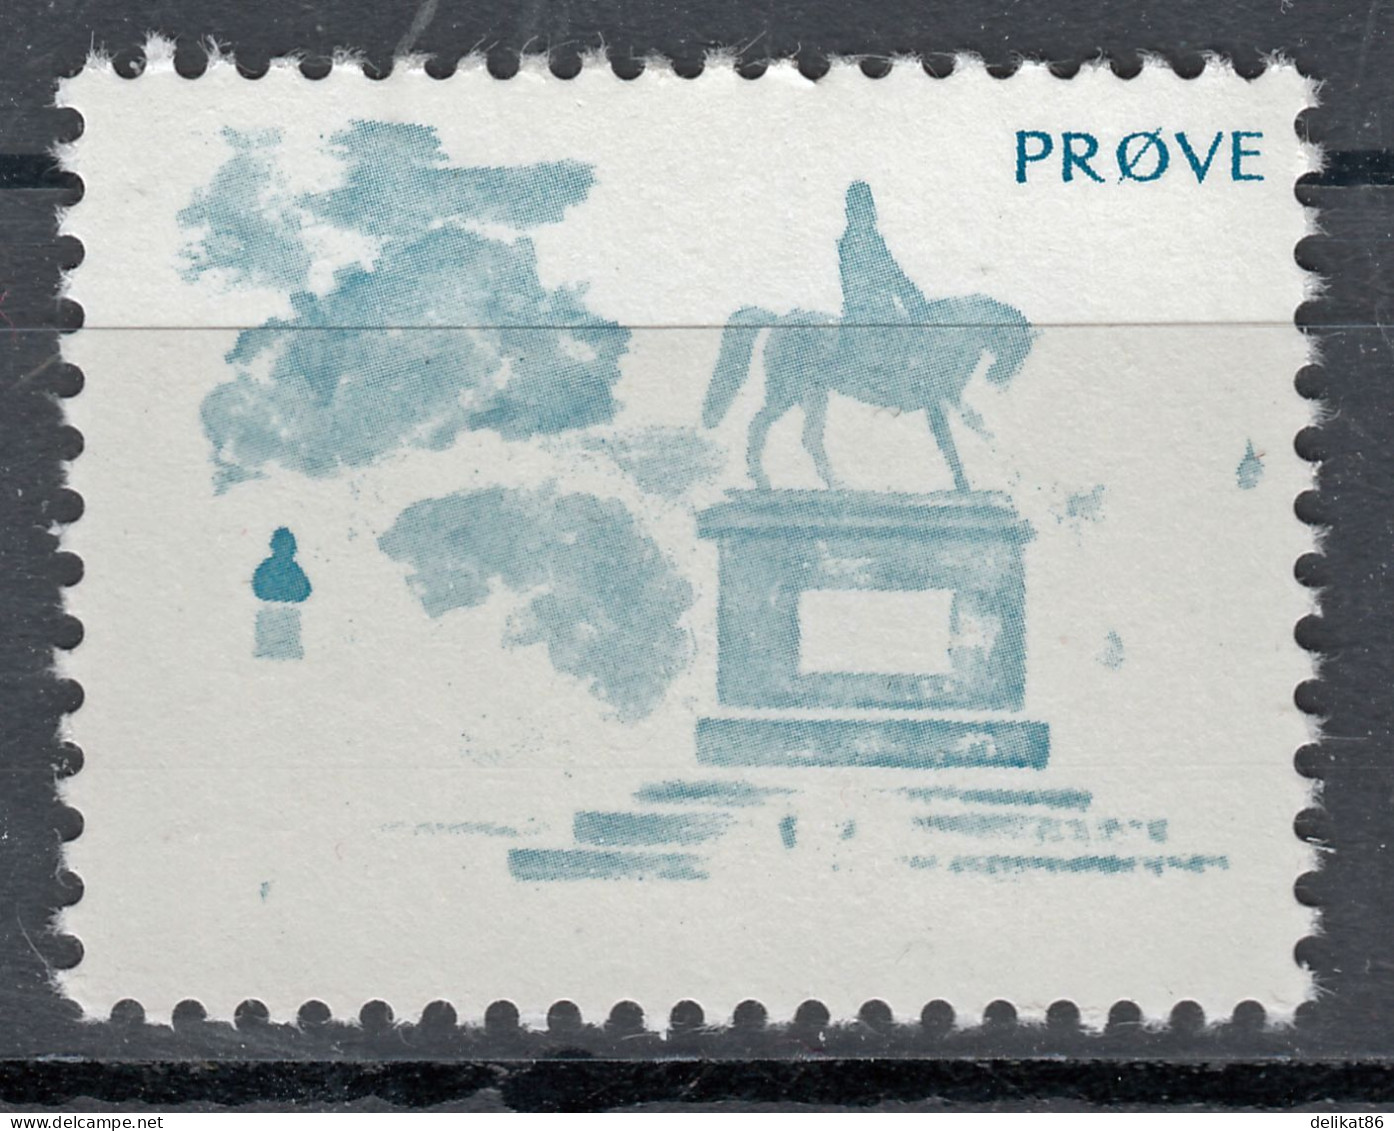 Test Stamp, Specimen, Prove, Probedruck, Reiterstandbild, Slania 1980 - 1985 - Proofs & Reprints